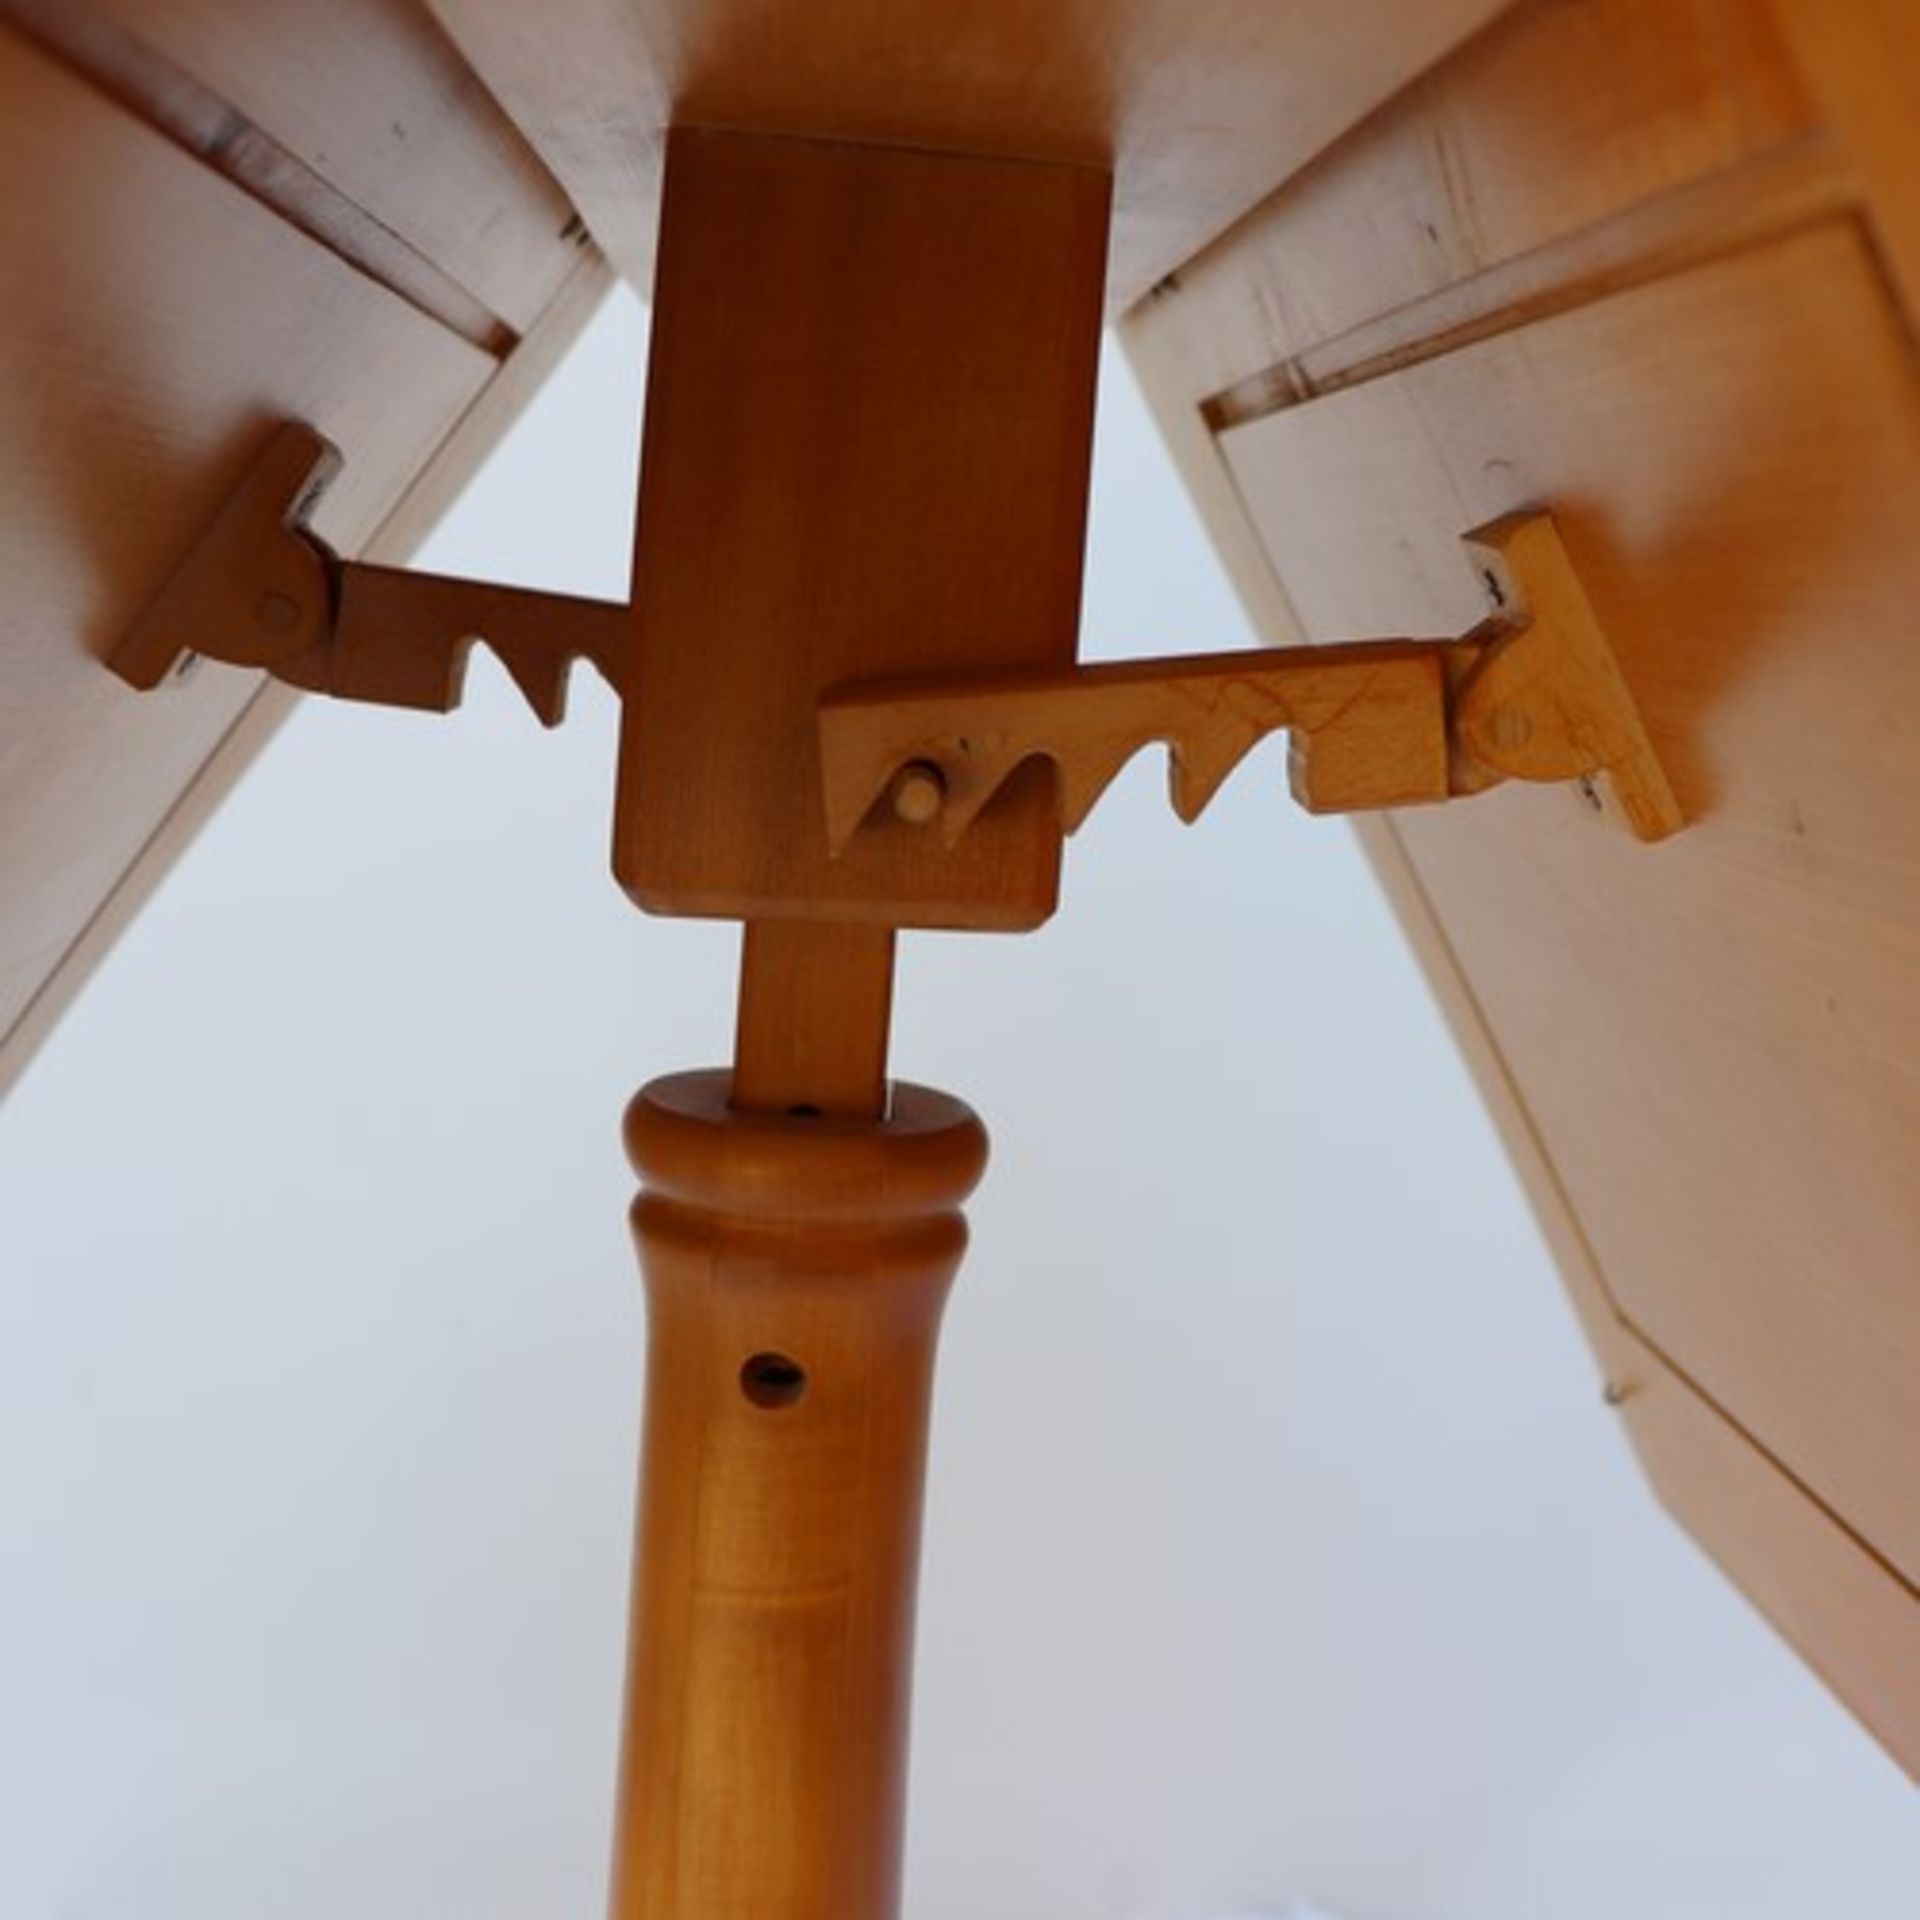 Notenständerhelles Holz, 4füßiger Stand, runder Schaft, zwei gegenüberliegende ausklappbare - Bild 5 aus 5